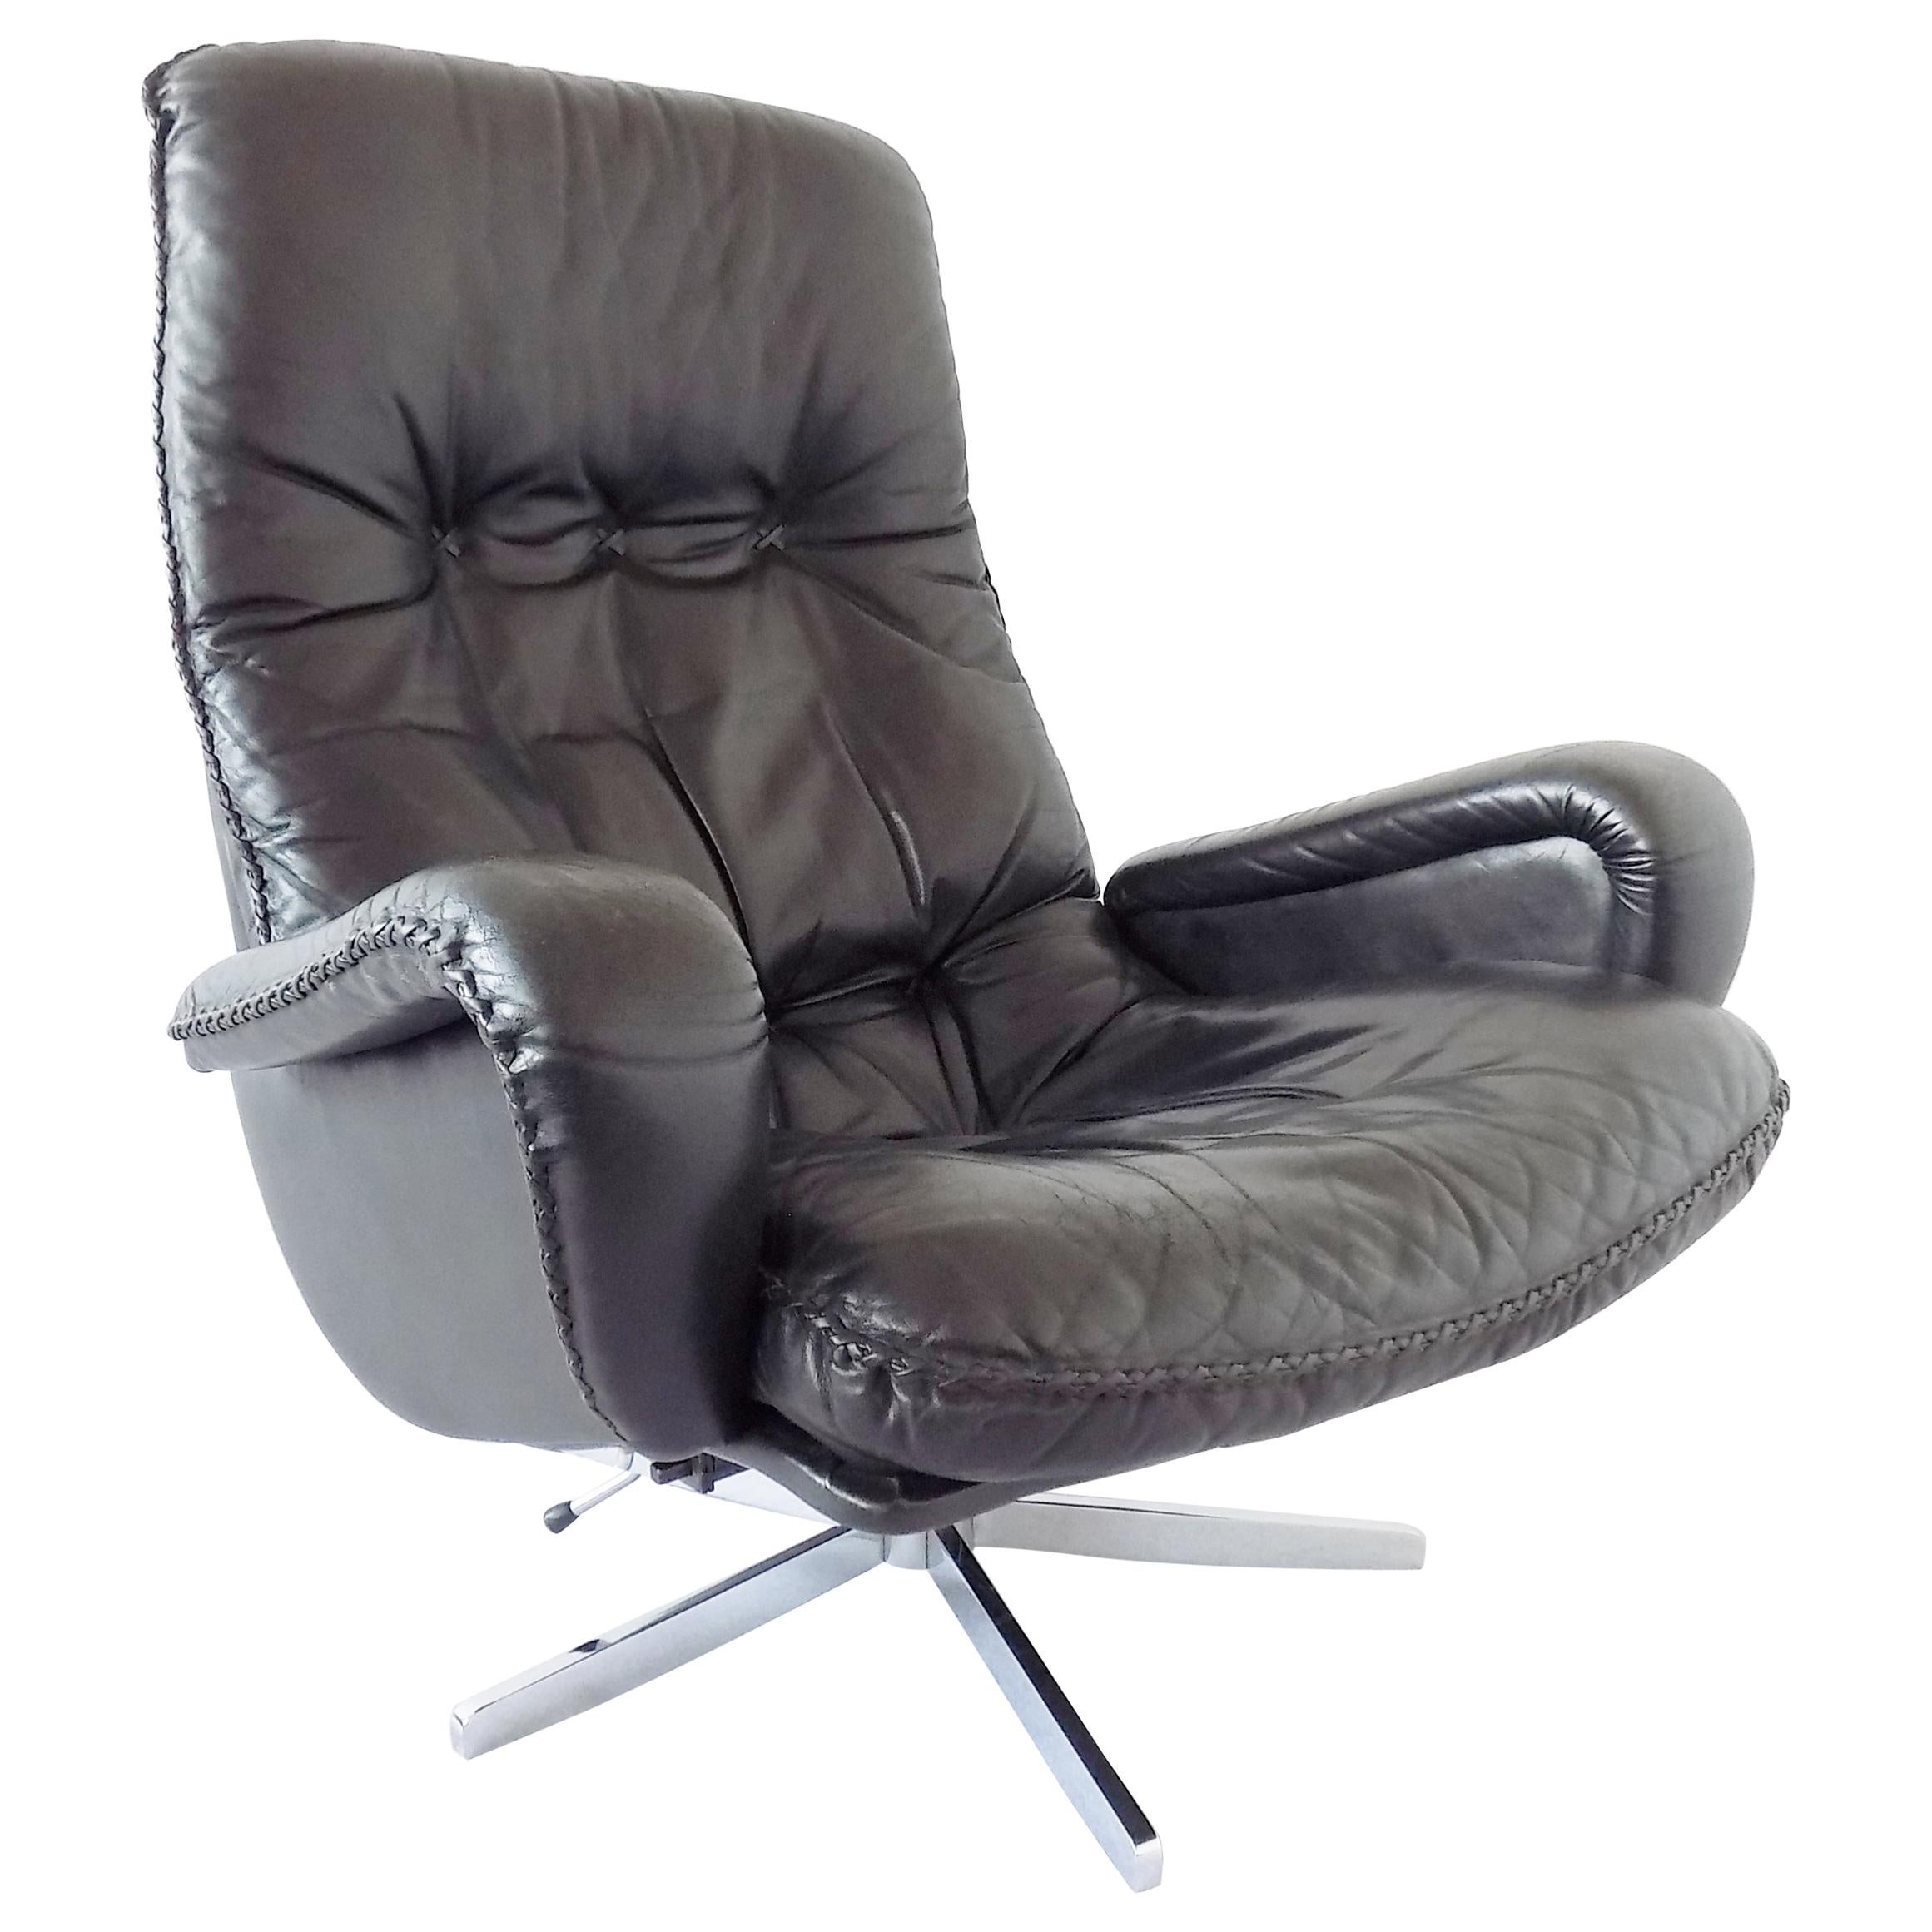 De Sede S 231 The James Bond Chair Black Leather